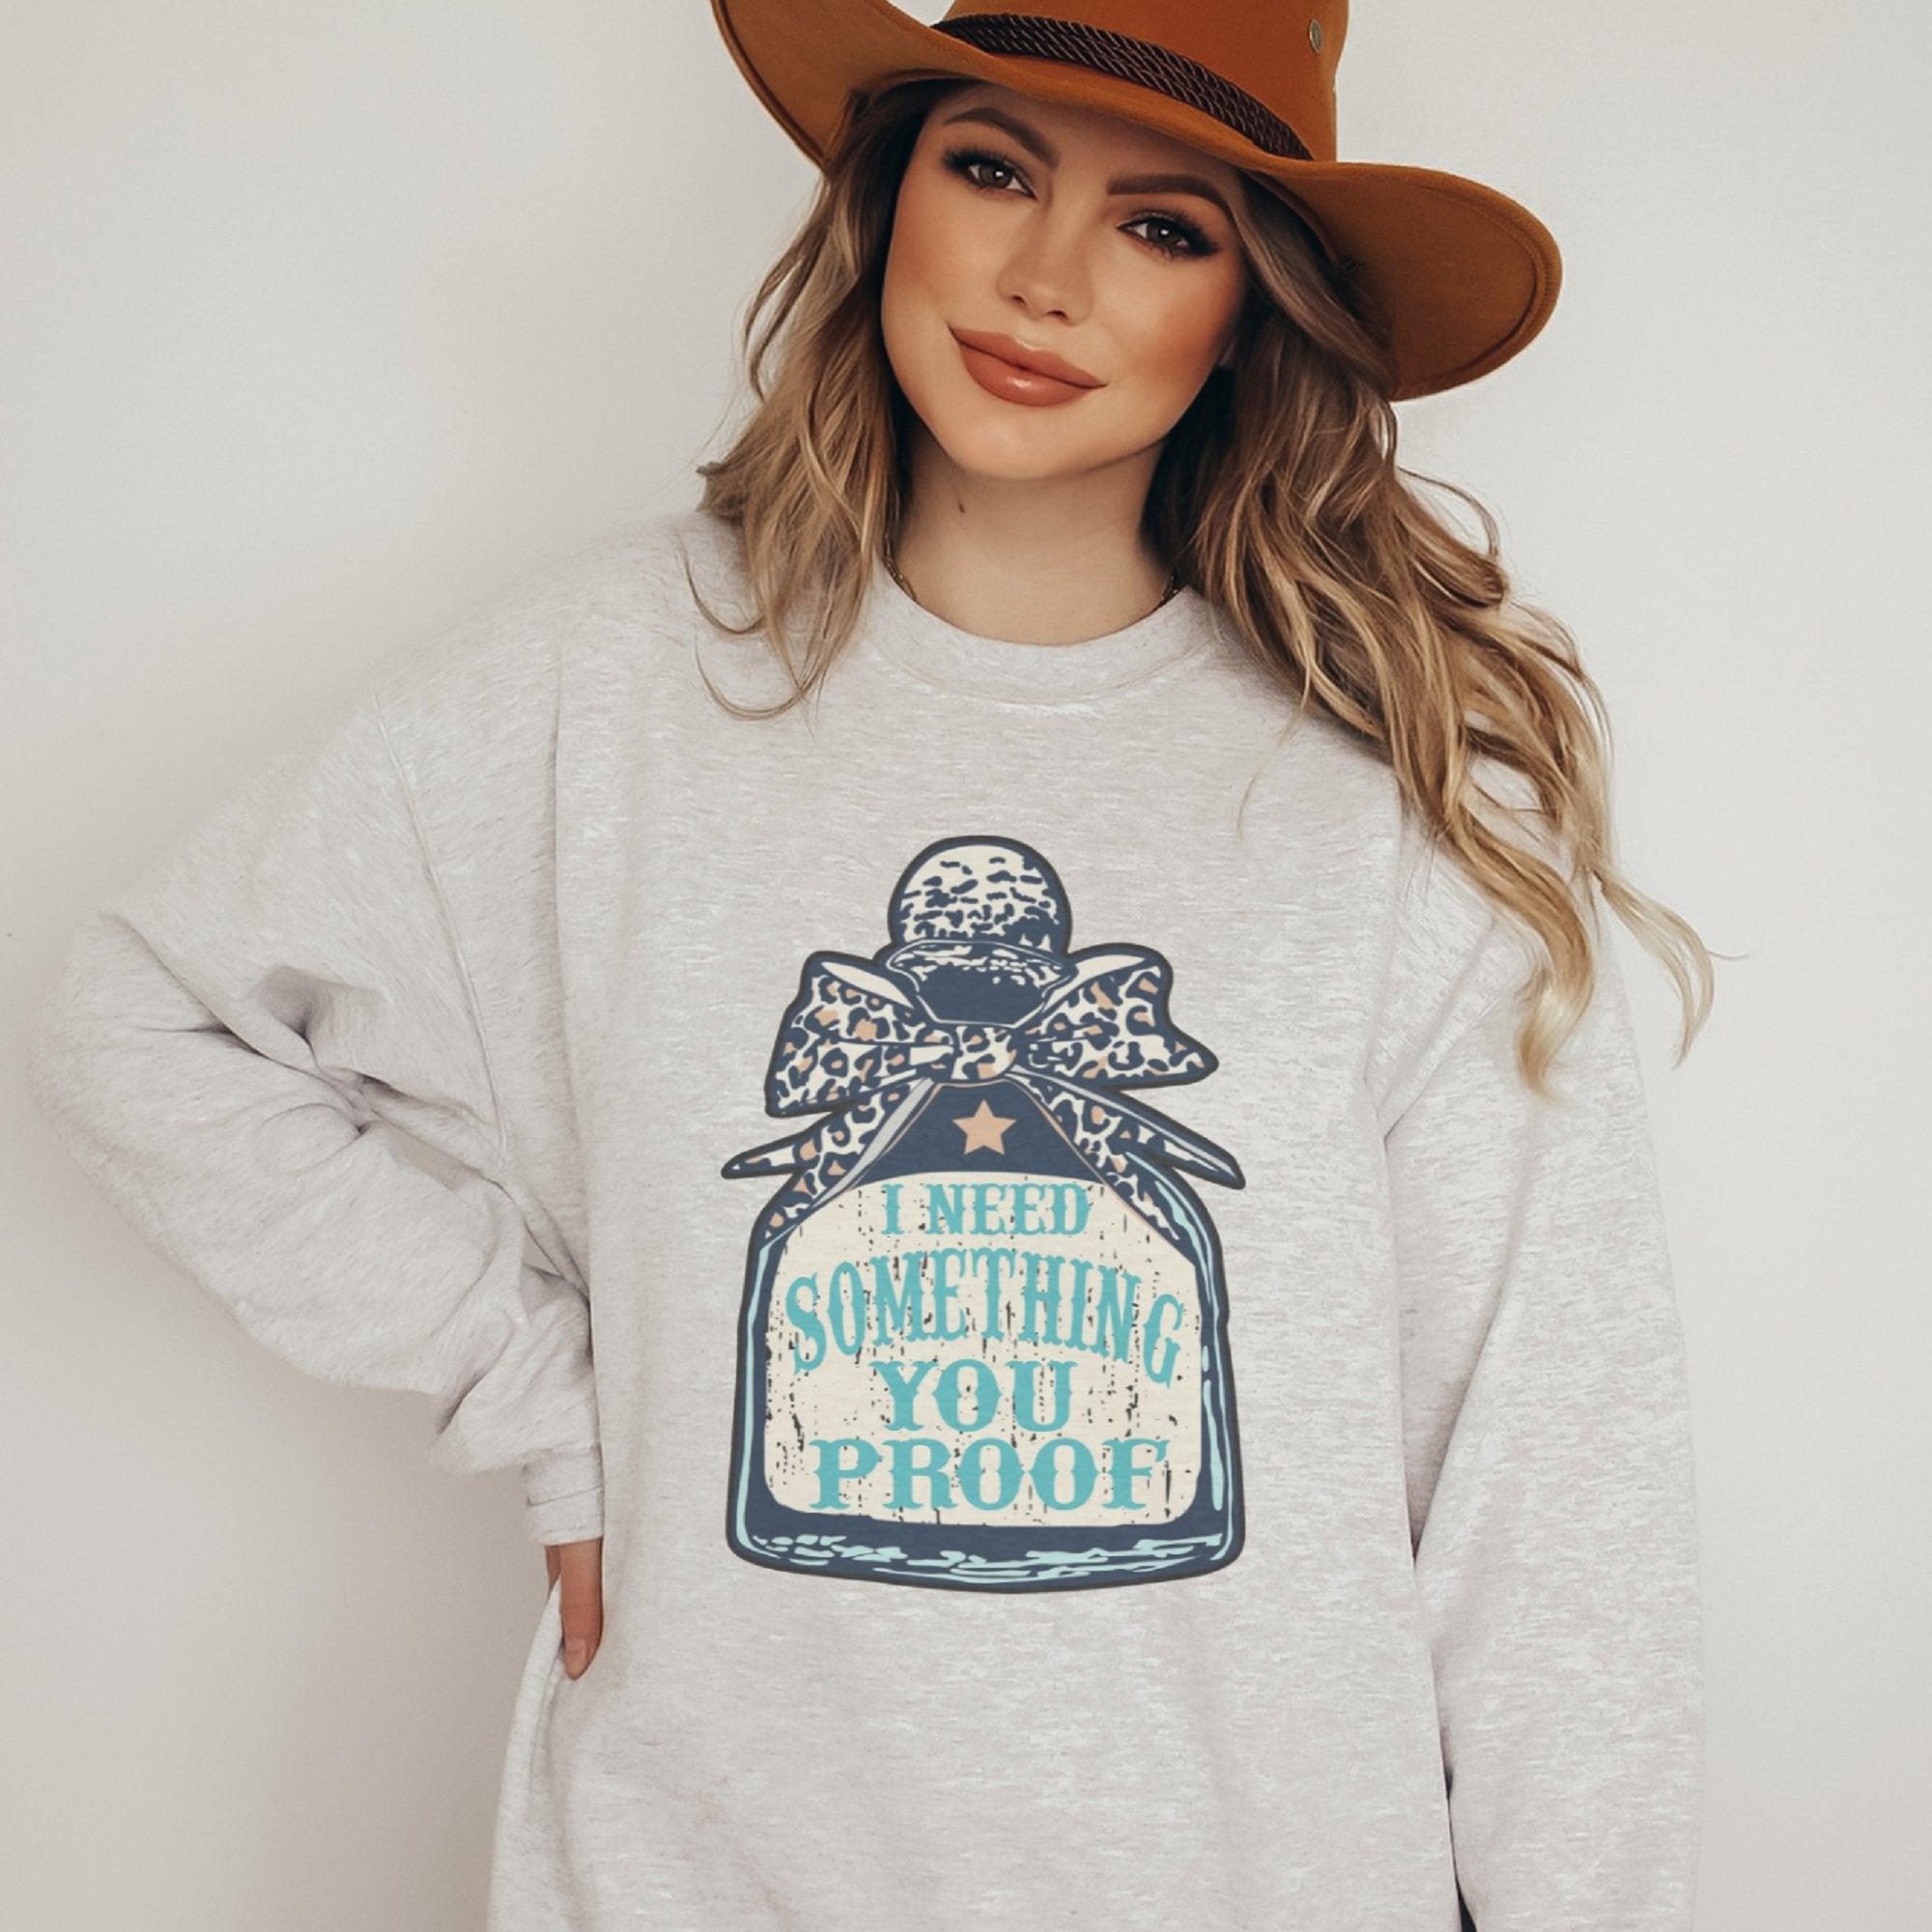 I Need Something You Proof Crewneck Sweatshirt - Trendznmore